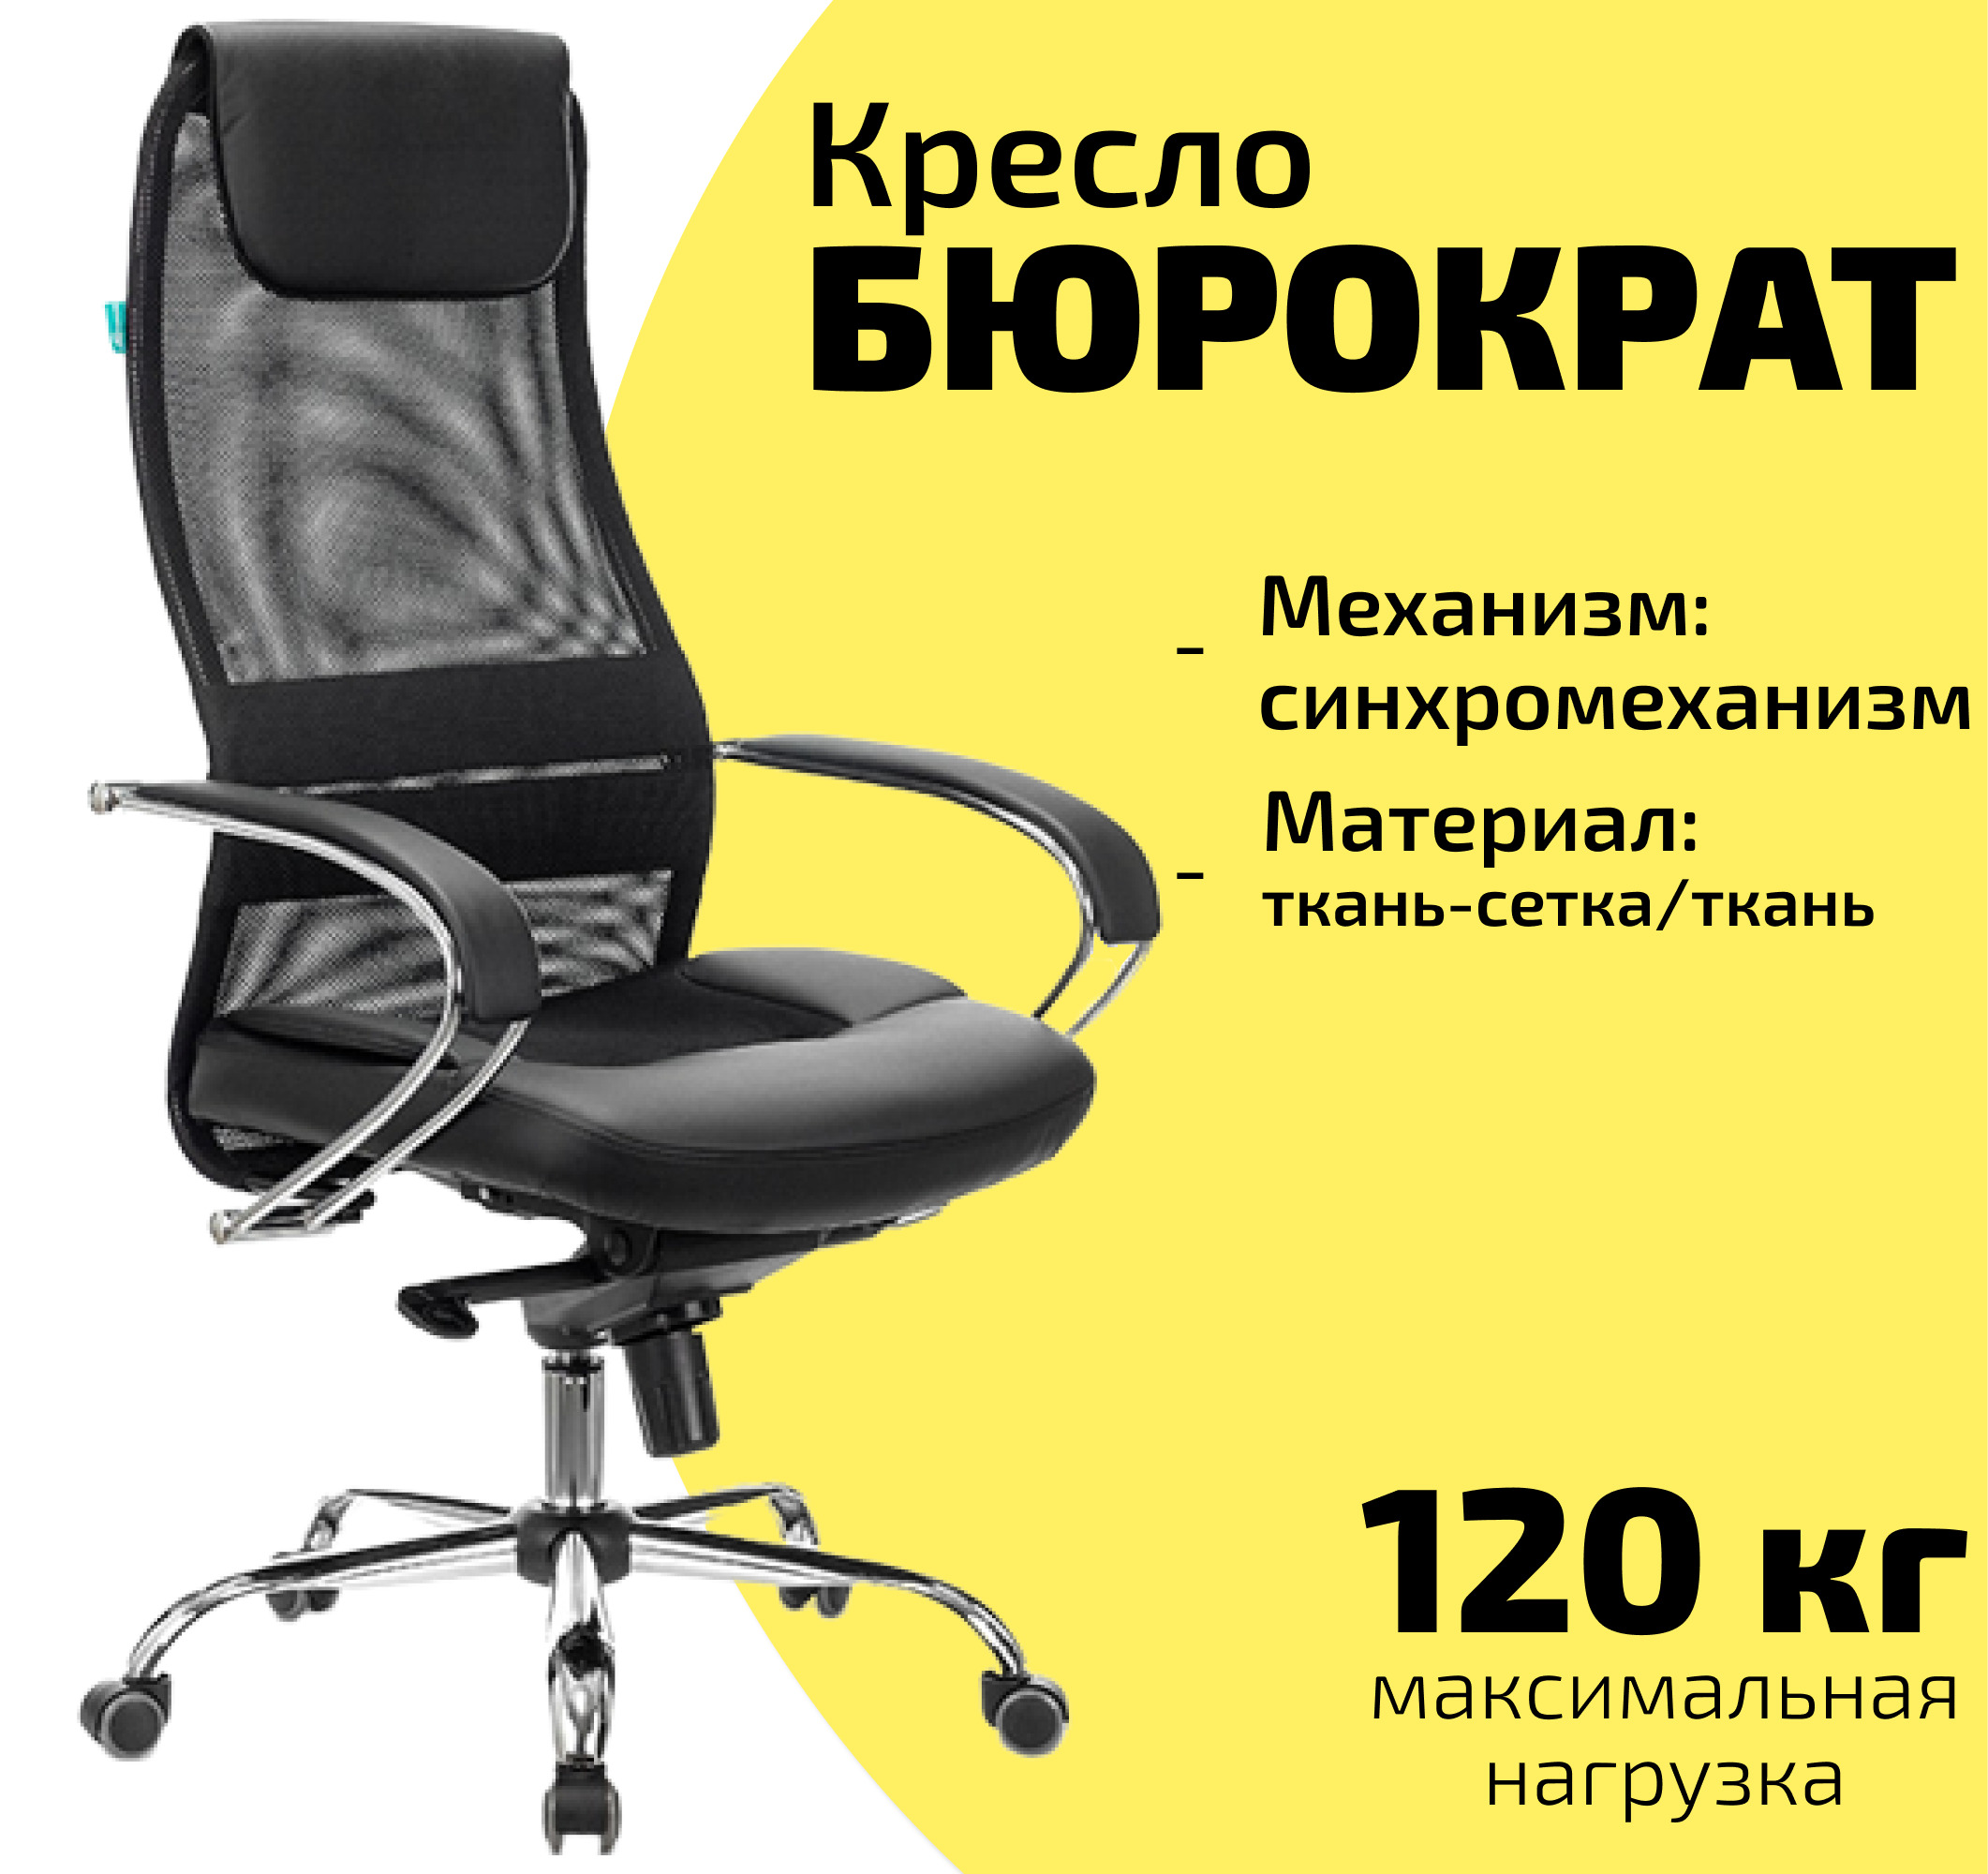 кресло офисное бюрократ ch 608